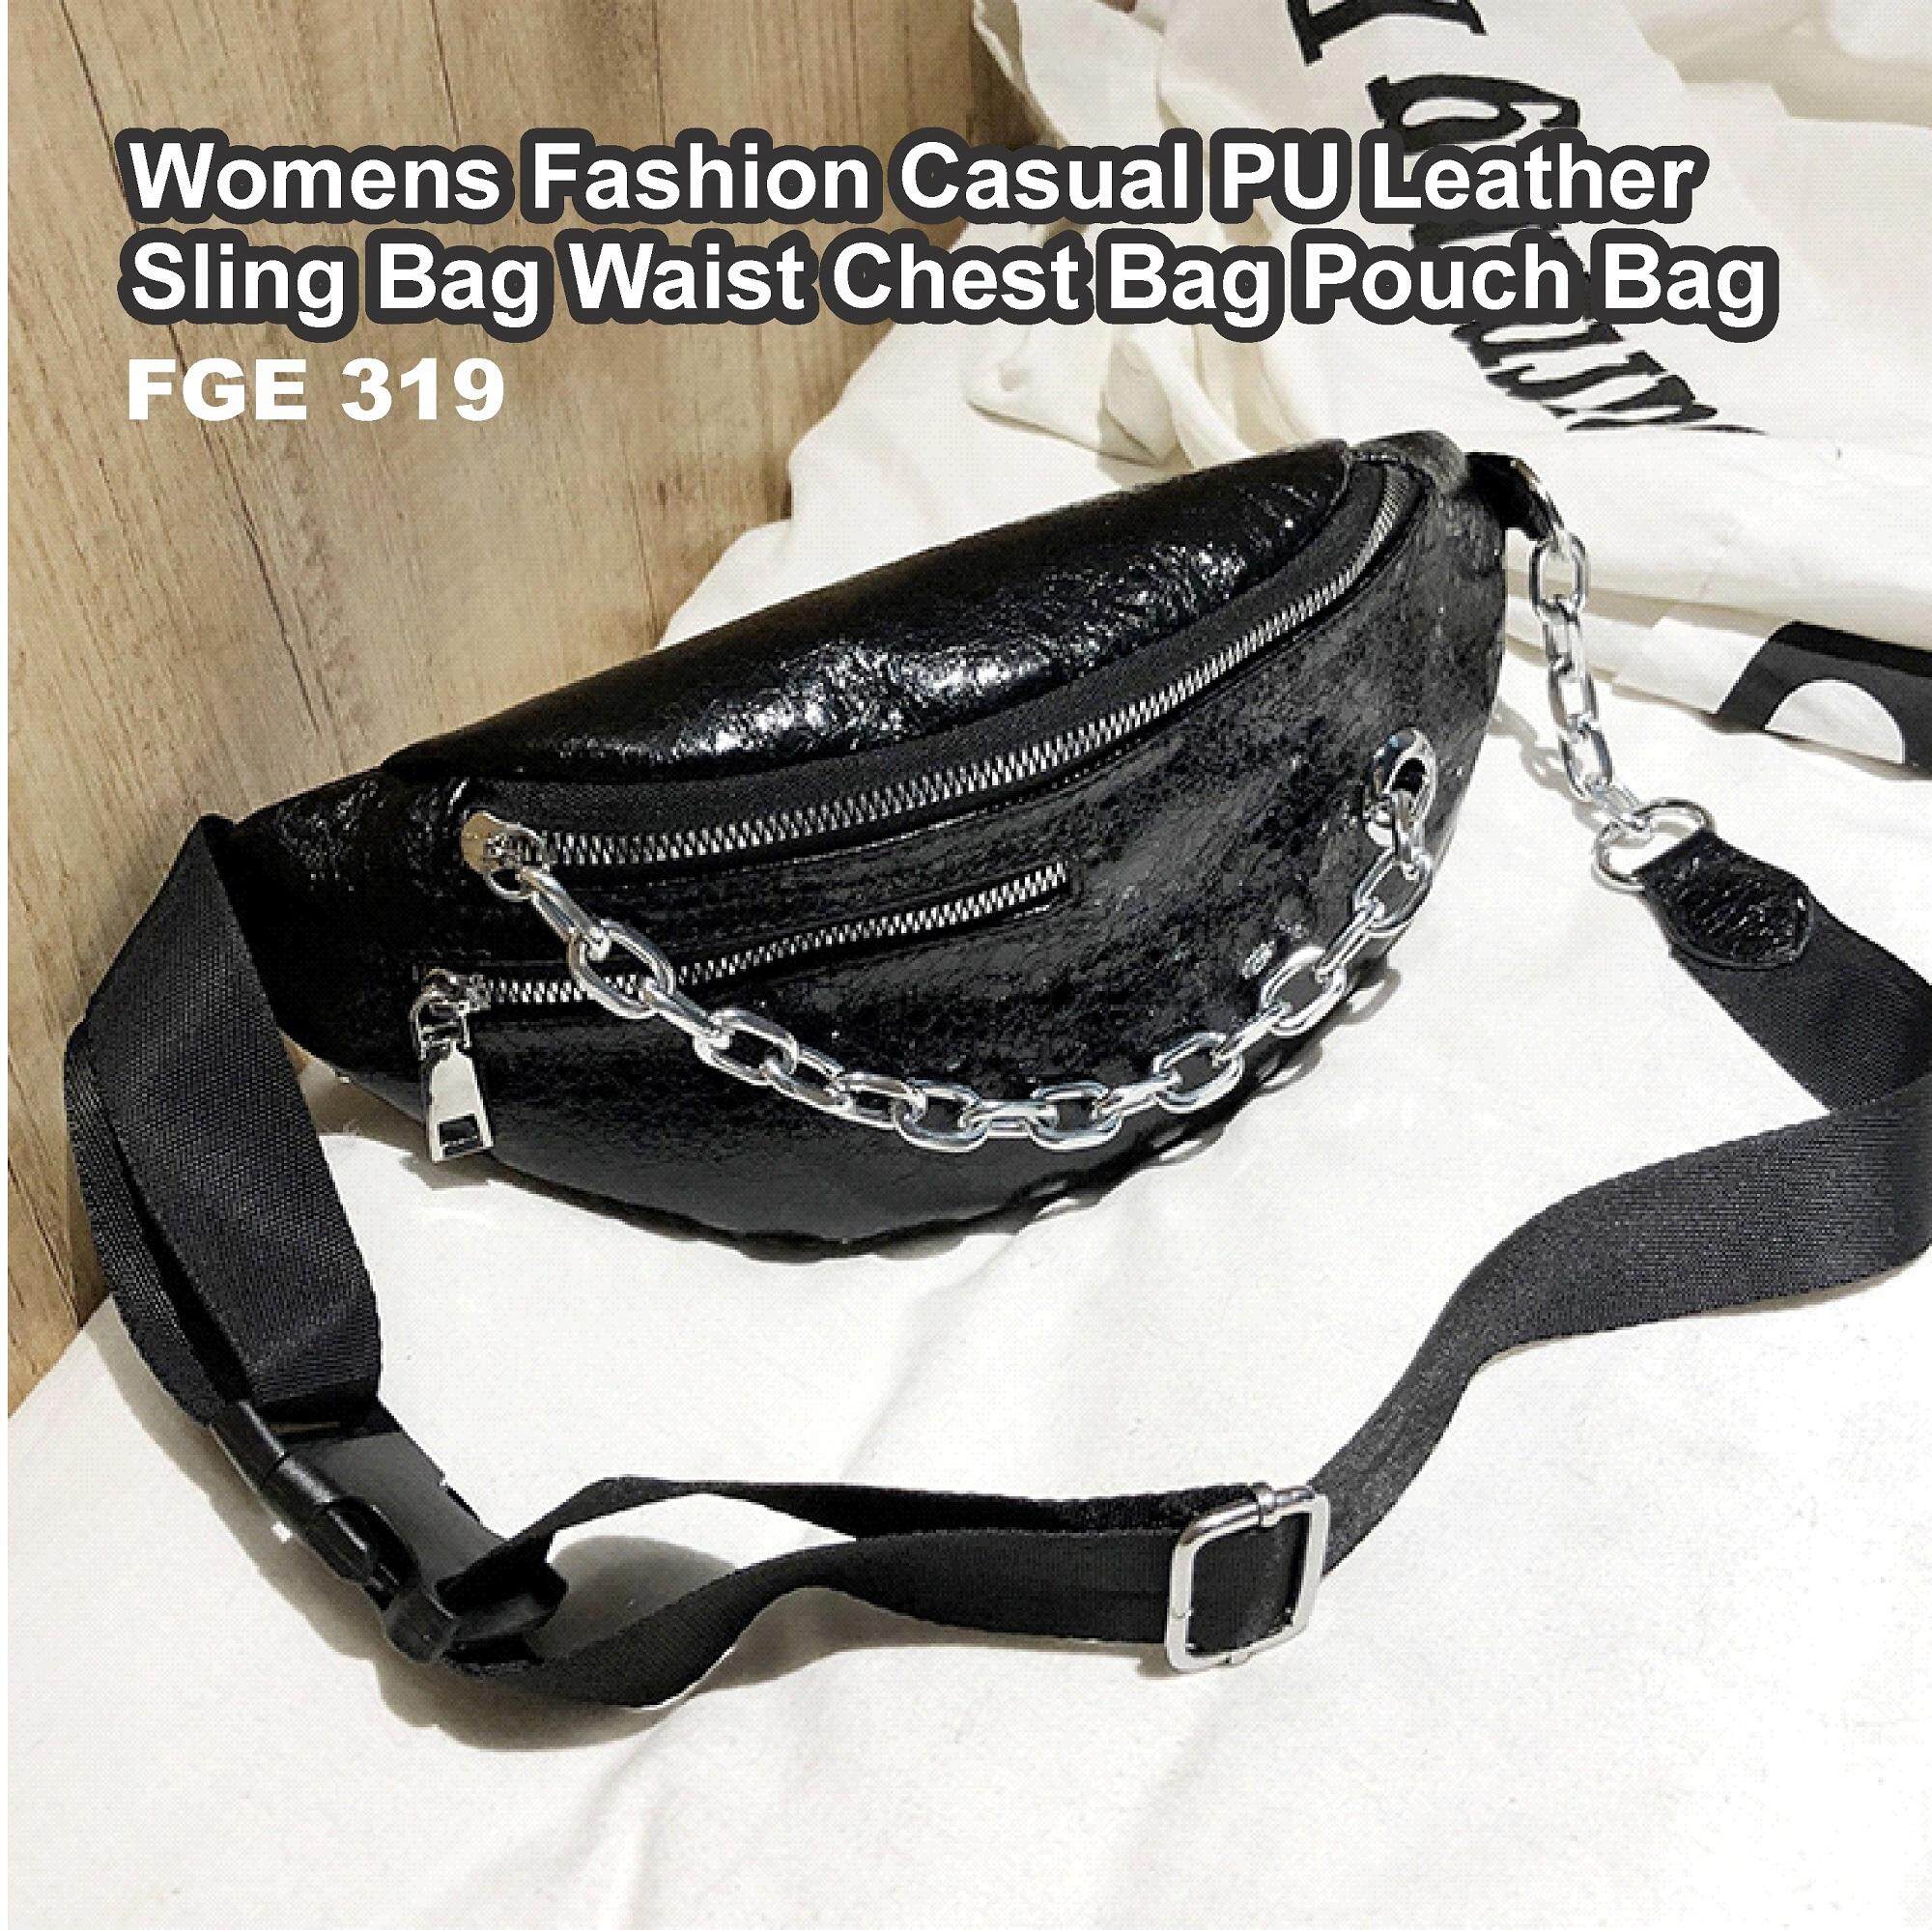 AFGY FGE 319 WOMENS FASHION CASUAL PU LEATHER SLING BAG WAIST BAG POUCH BAG